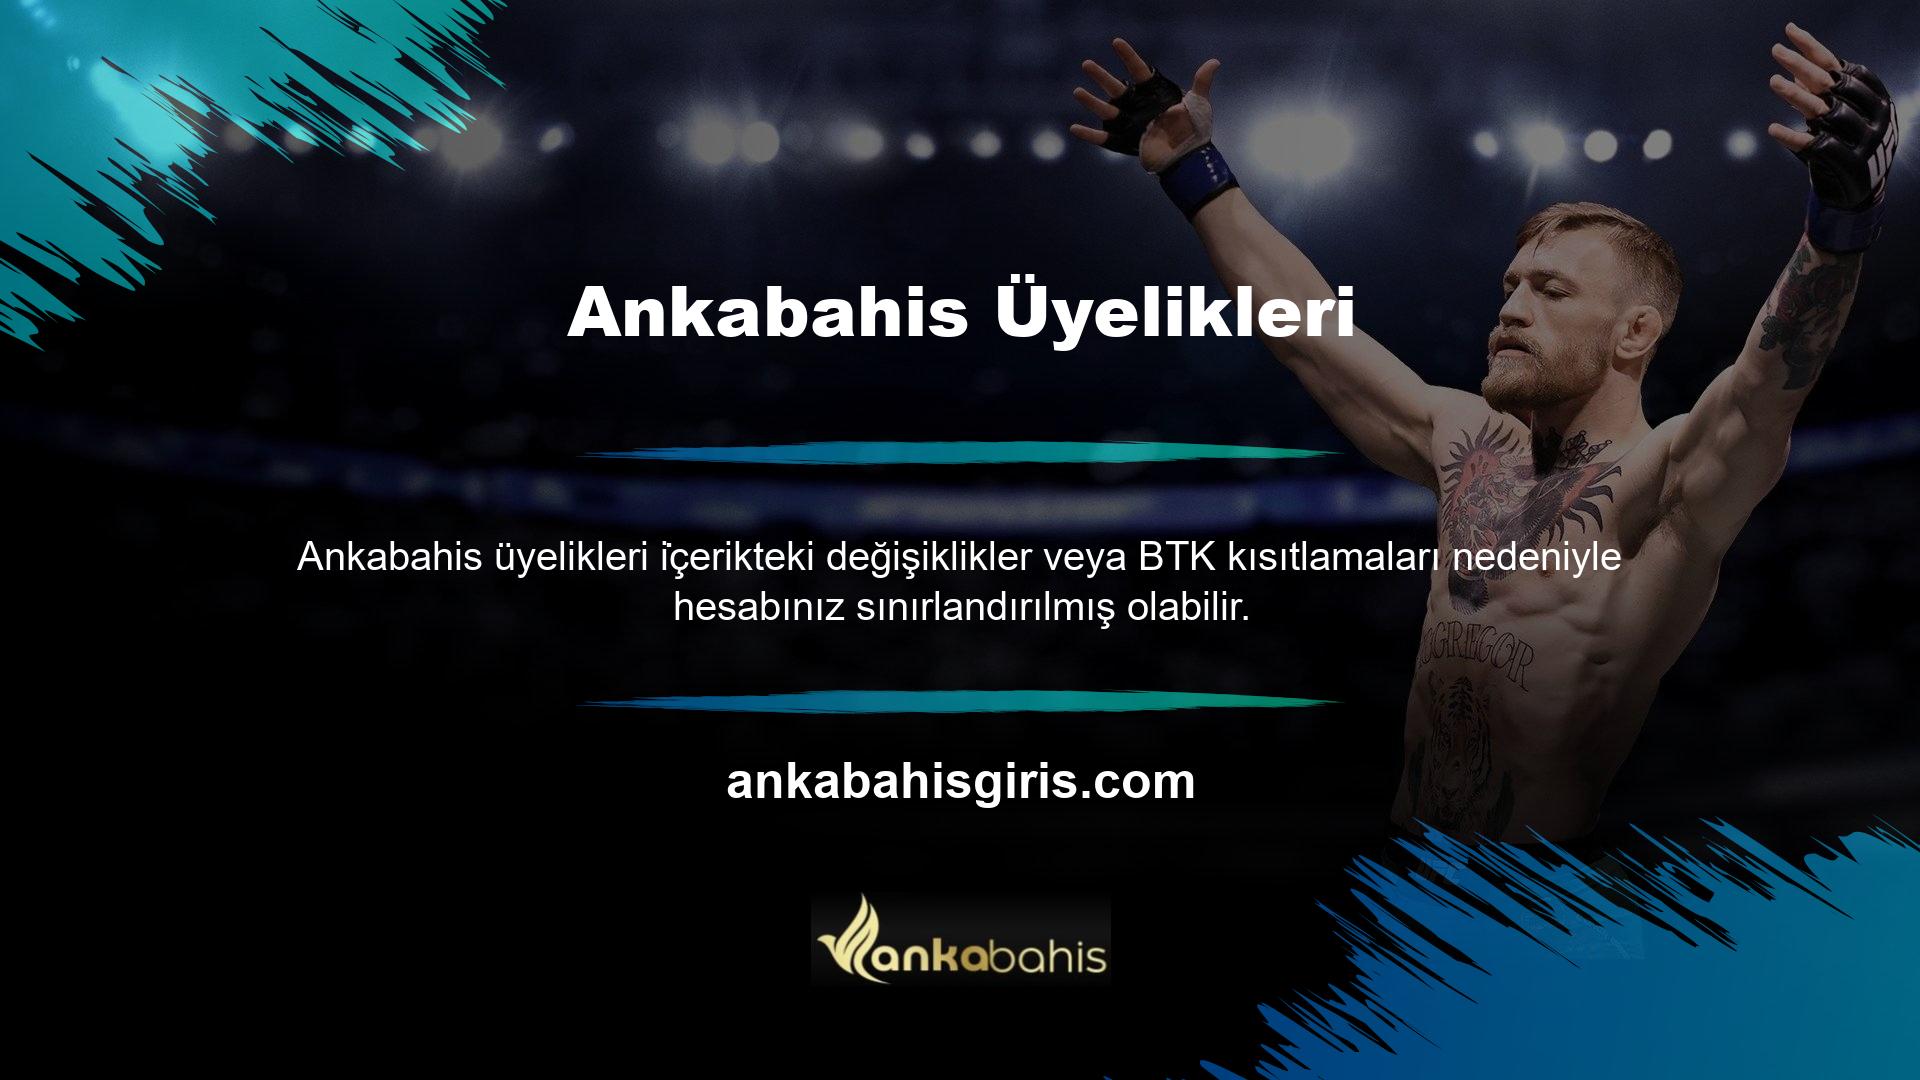 Ankabahis en popüler bahis oyunu Canlı Bahis, kullanıcılara kullanıcı dostu bir arayüz ve anında erişilebilen ileri teknoloji sunmaktadır